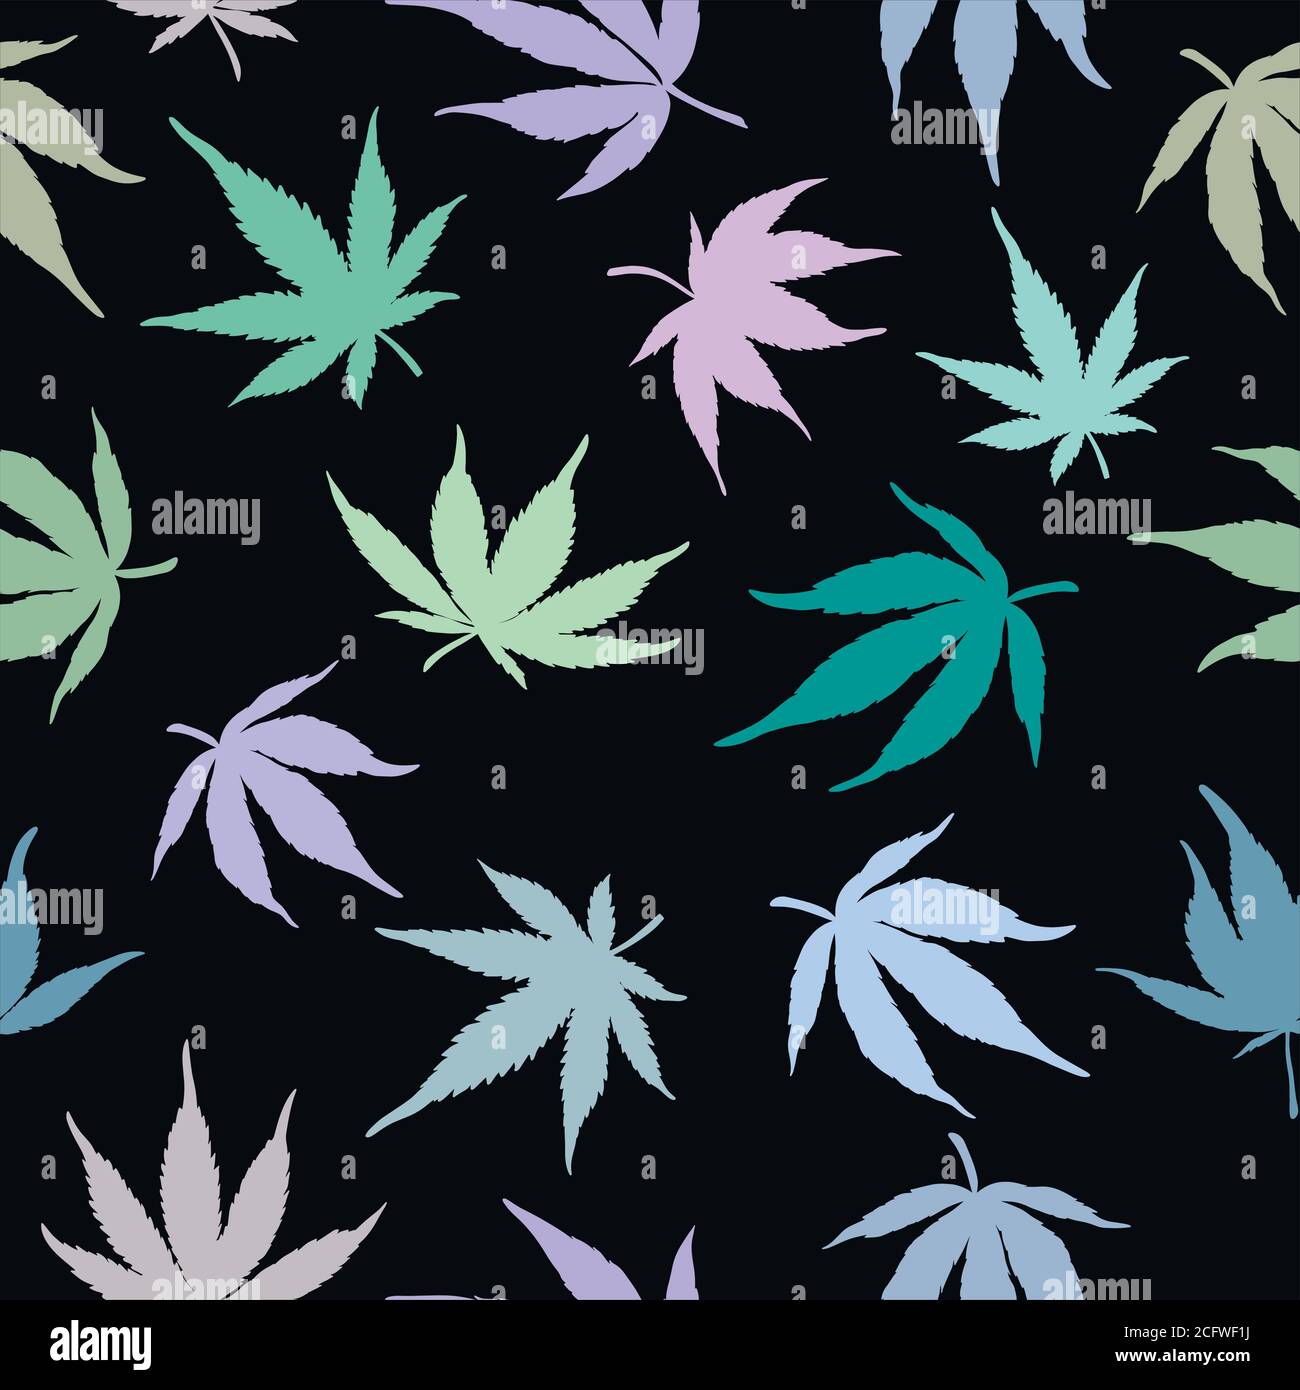 Inevitable once Escritor Arte del cannabis fotografías e imágenes de alta resolución - Página 6 -  Alamy